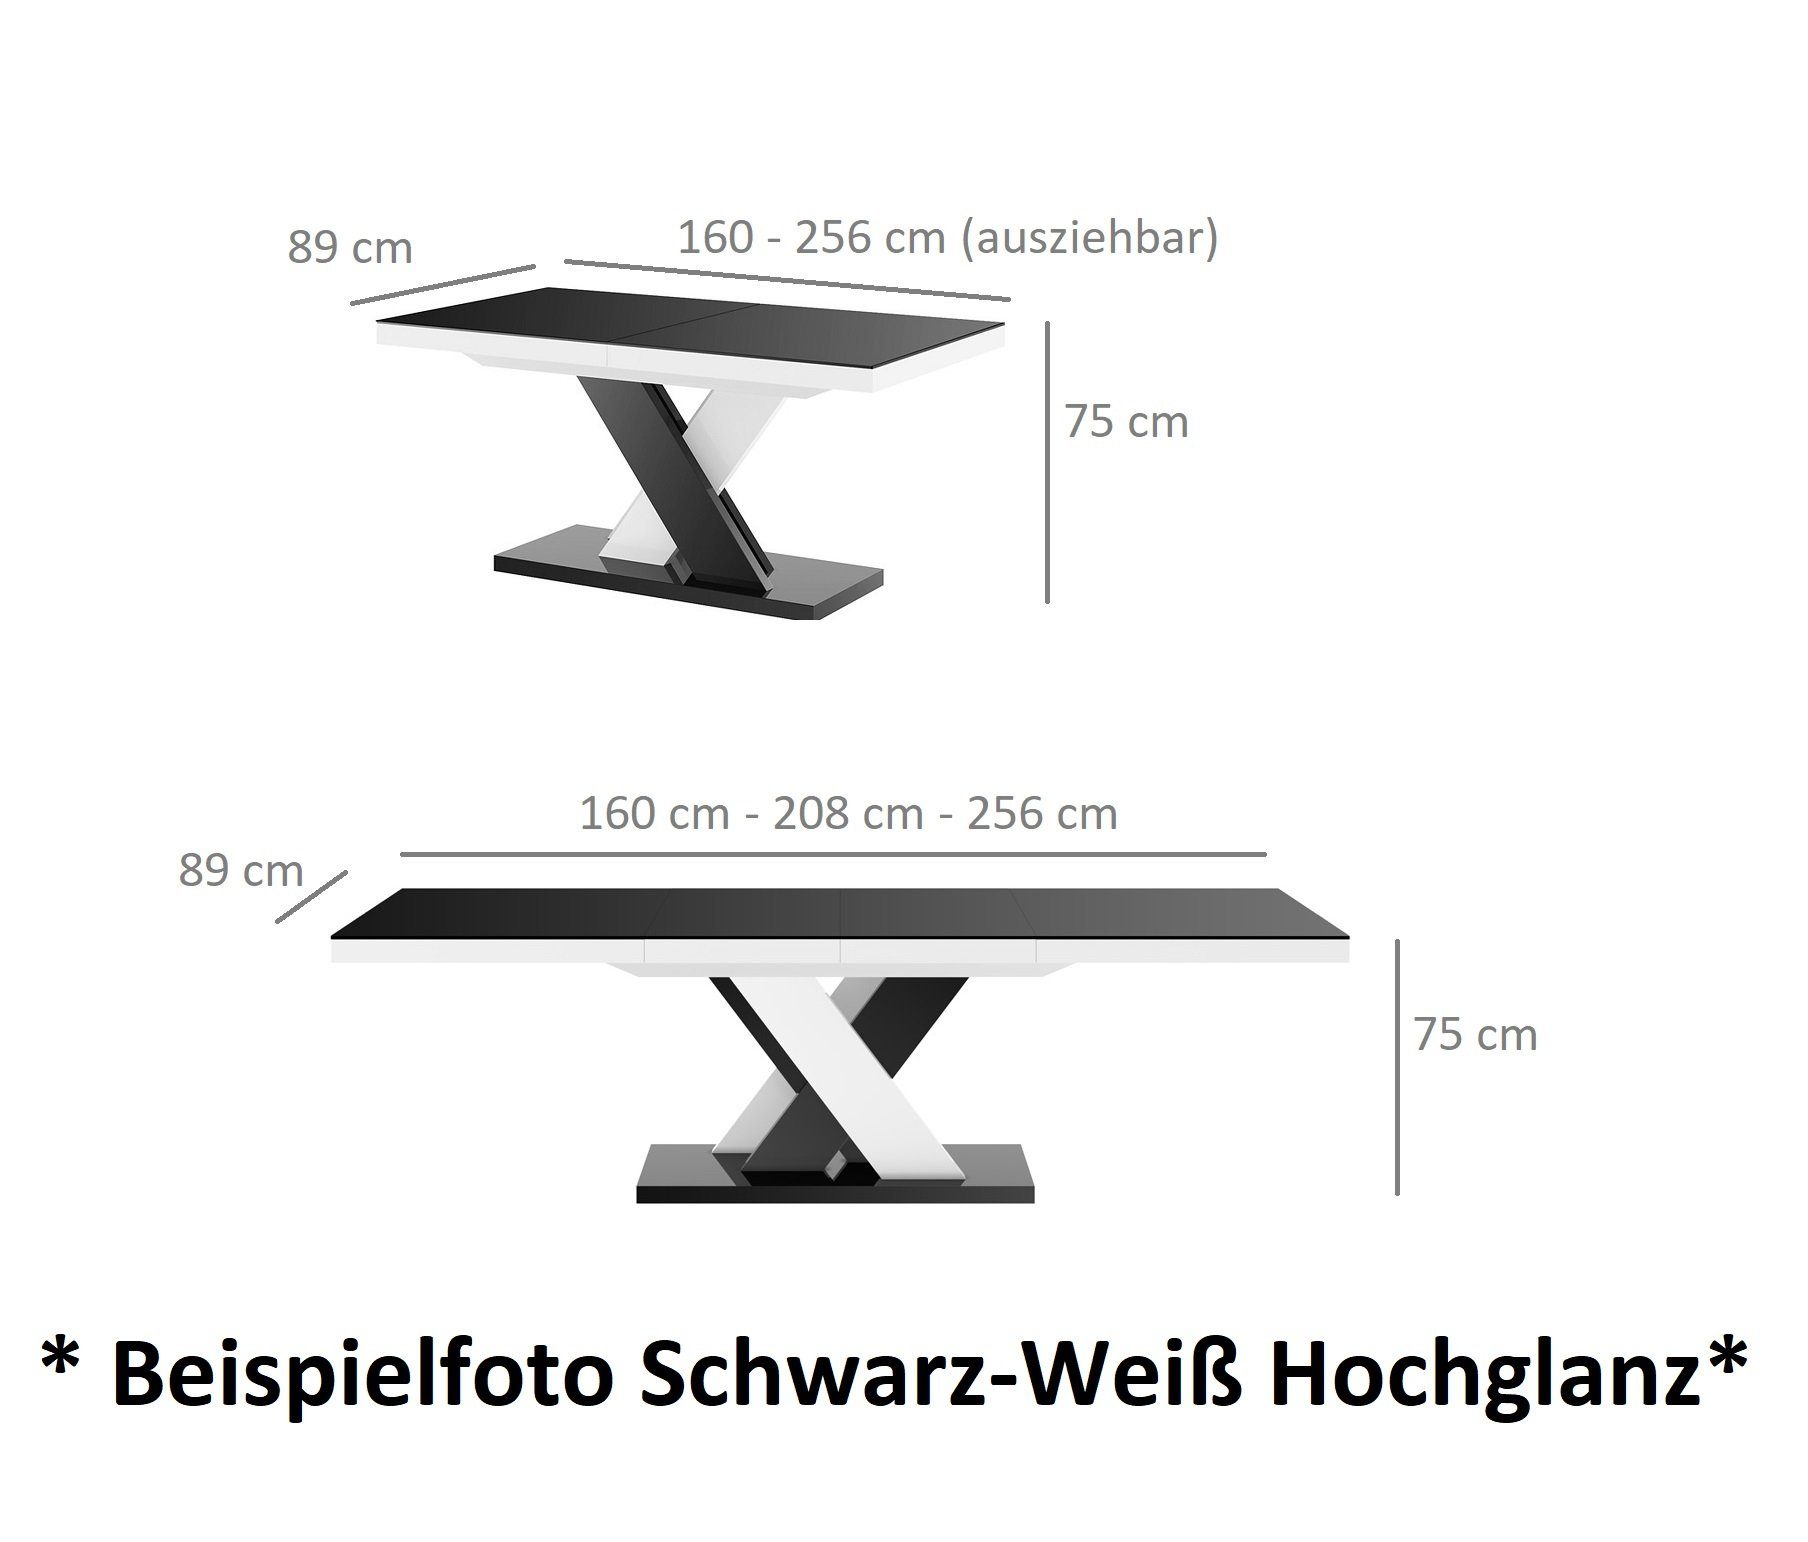 Weiß / Hochglanz Grau Weiß ausziehbar Tisch HEN-111 Esstisch Hochglanz Design Hochglanz 256 cm Grau 160 / designimpex bis